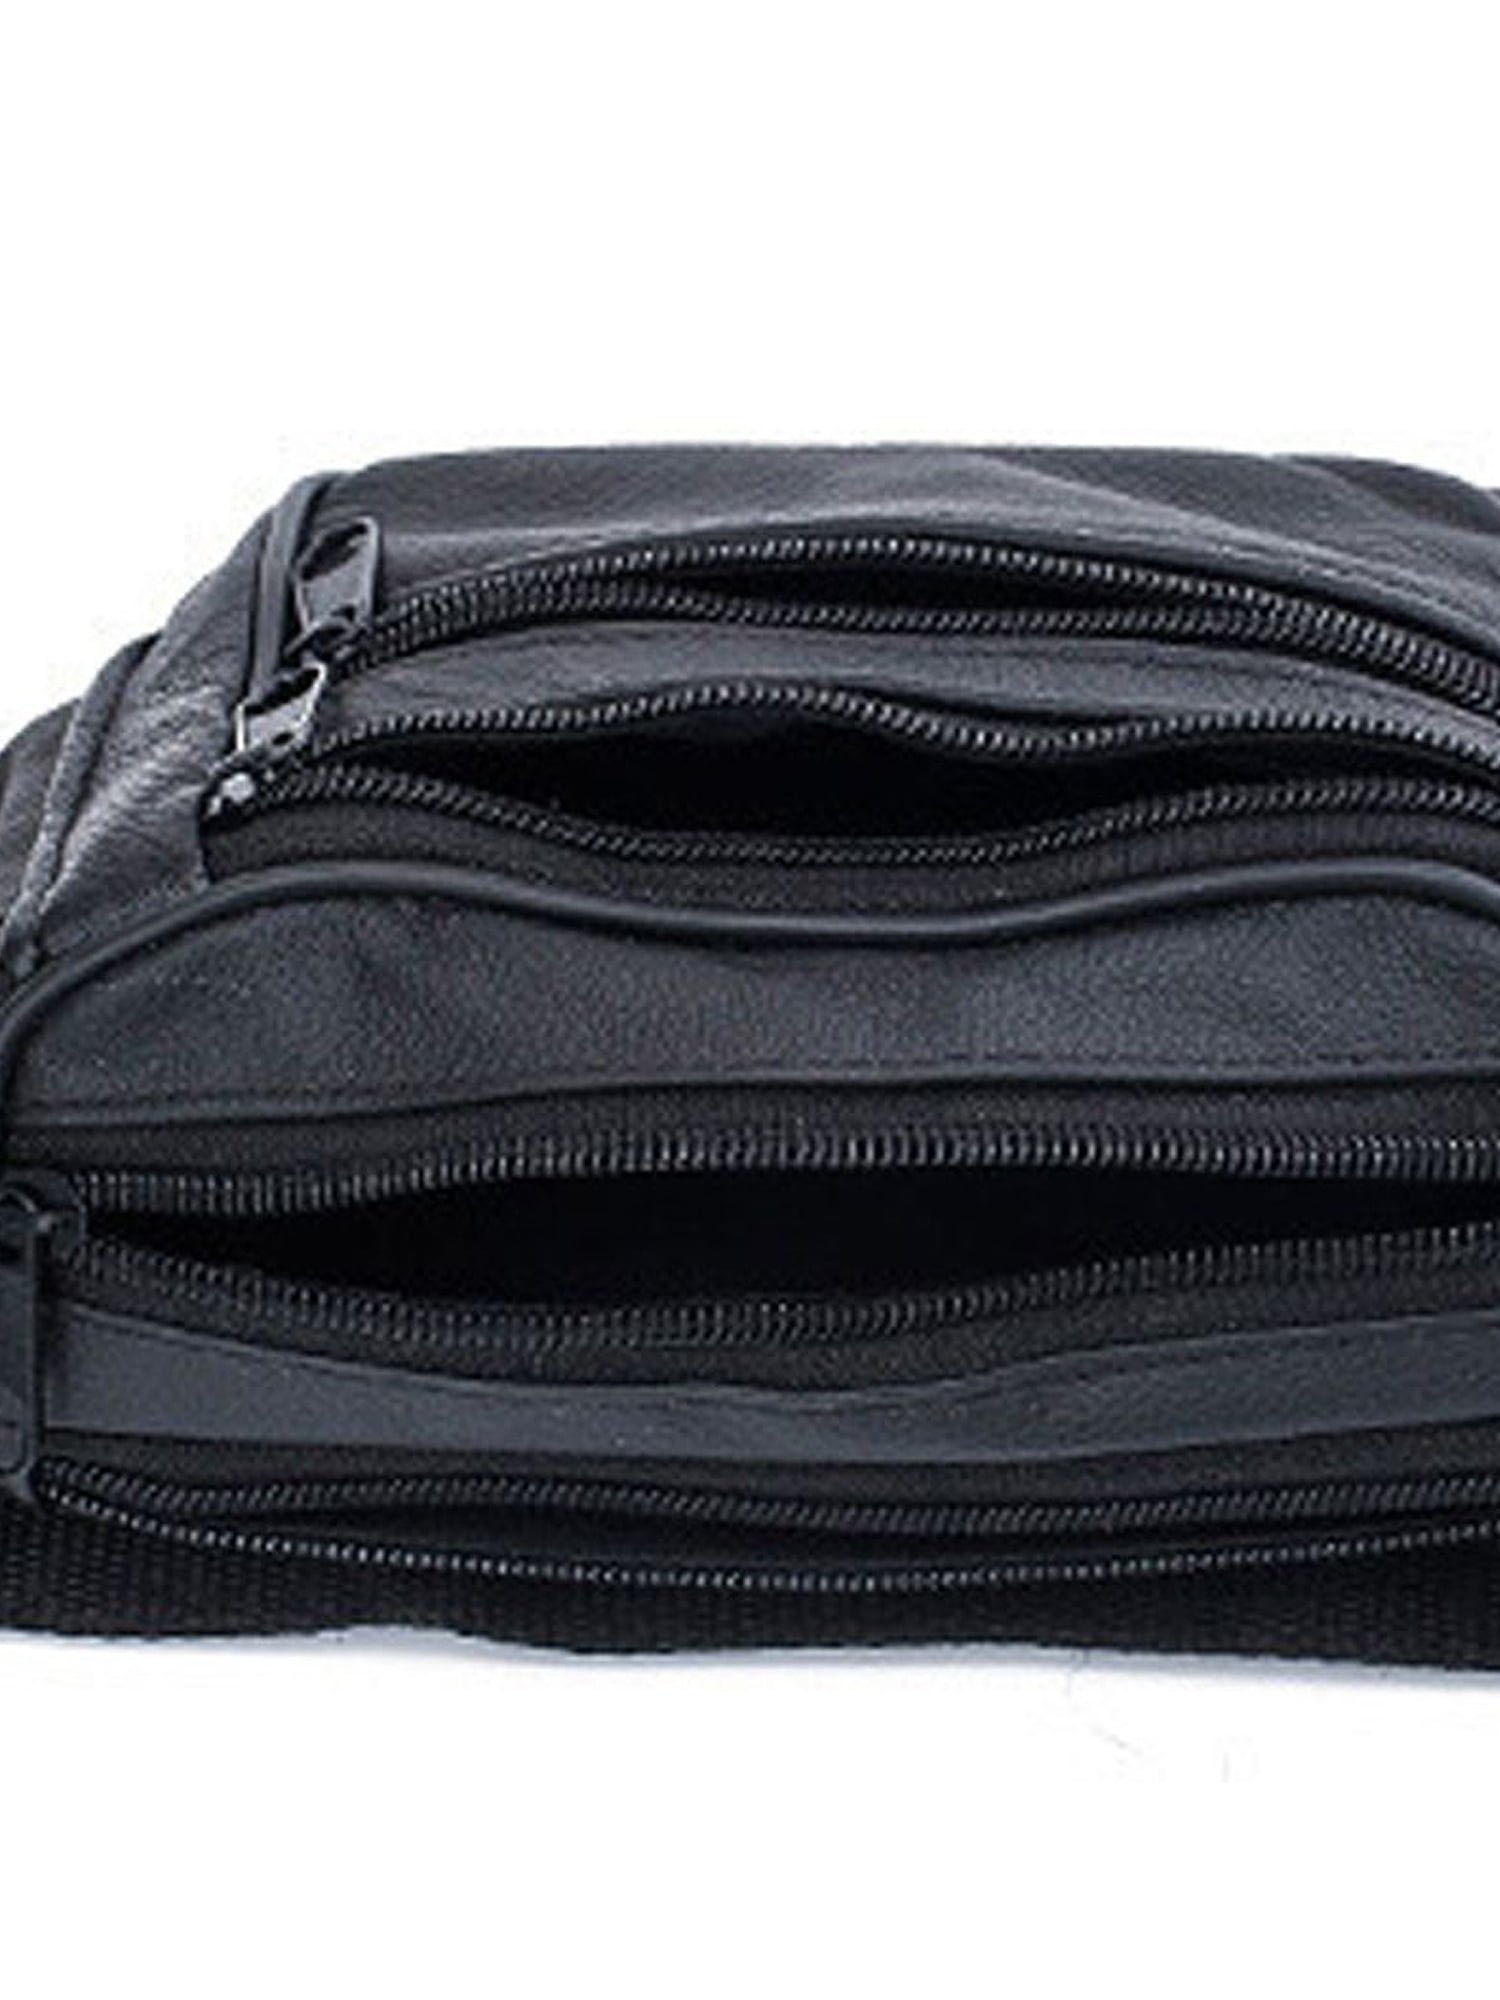 Paddsun Fanny Pack For Waist Bag Men Women Hip Belt Pouch Pocket Travel  Sport Waterproof